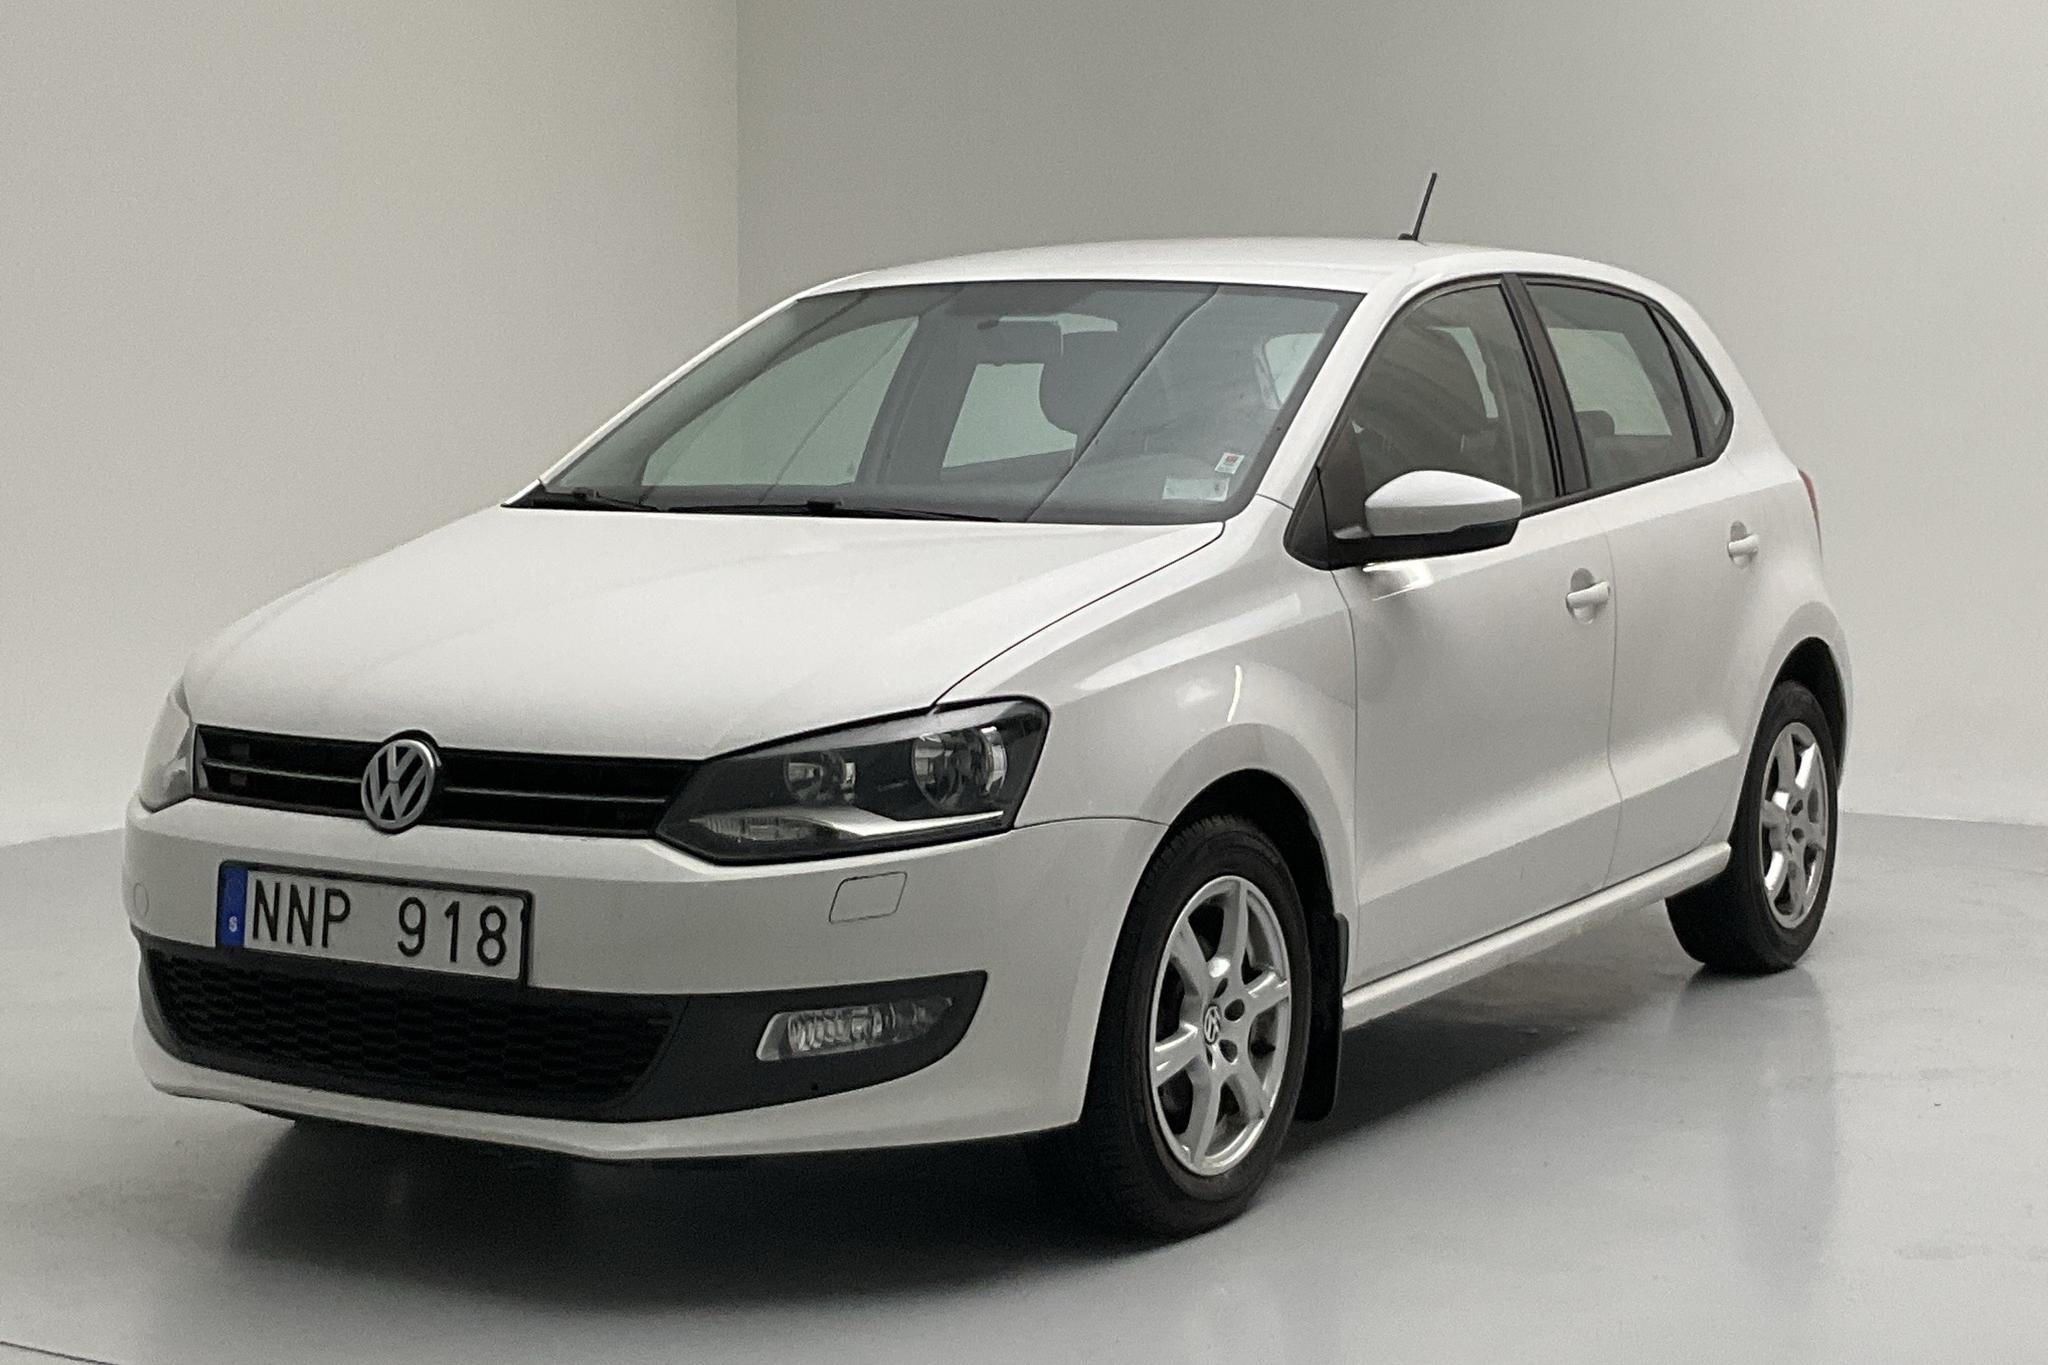 VW Polo 1.2 TSI 5dr (90hk) - 108 460 km - Manual - white - 2013